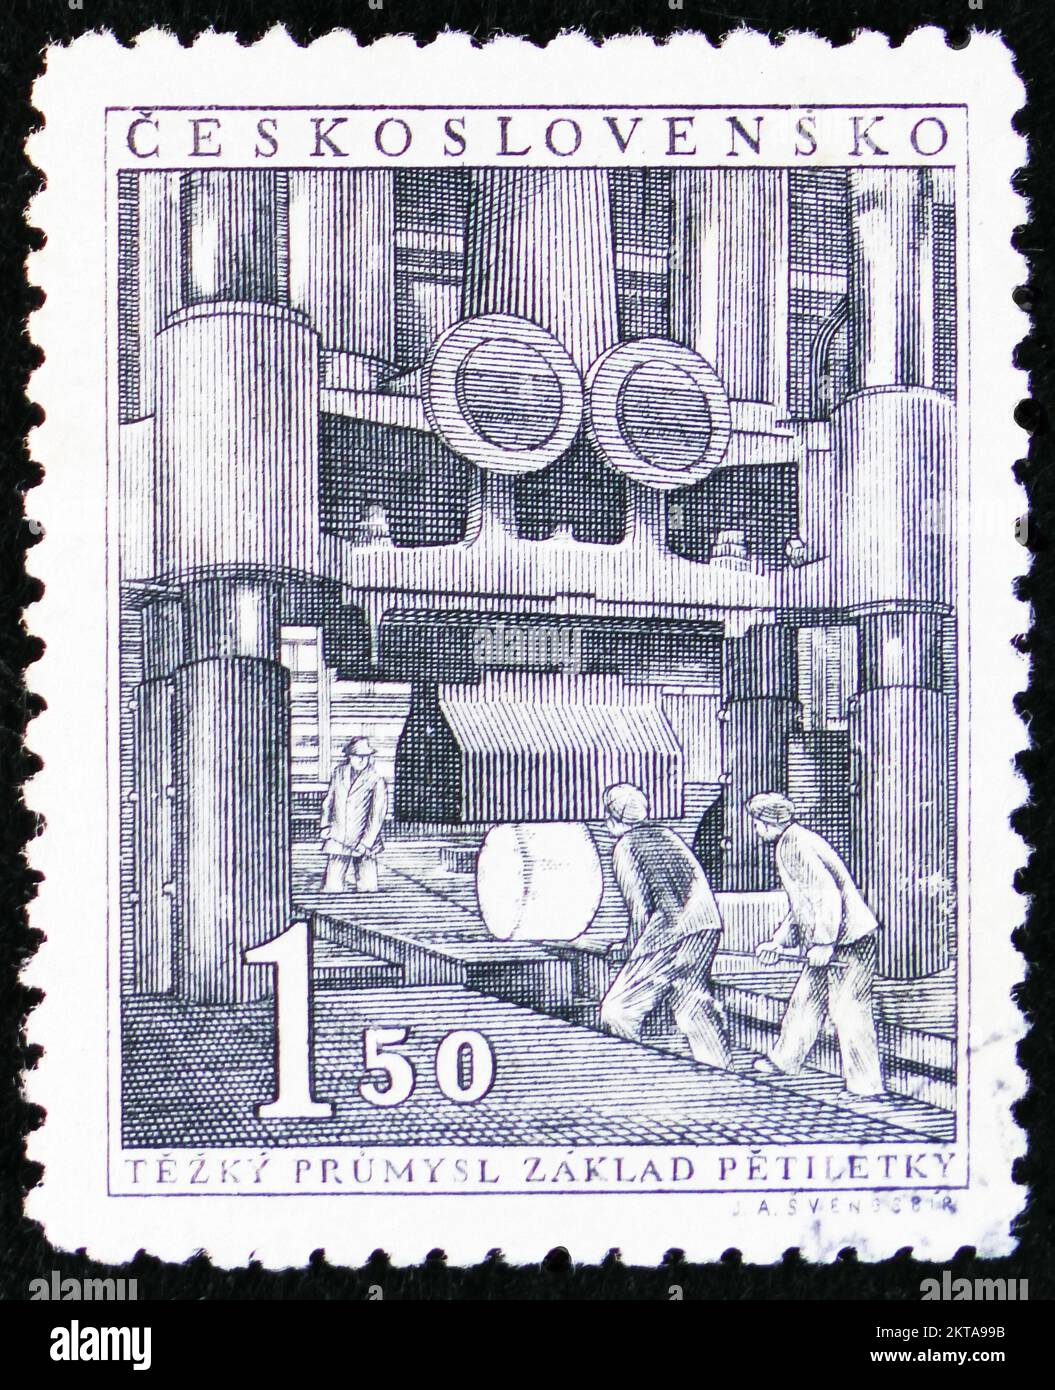 MOSCOU, RUSSIE - 29 OCTOBRE 2022 : timbre-poste imprimé en Tchécoslovaquie montre un marteau à goutte, première série de plan quinquennal, vers 1951 Banque D'Images